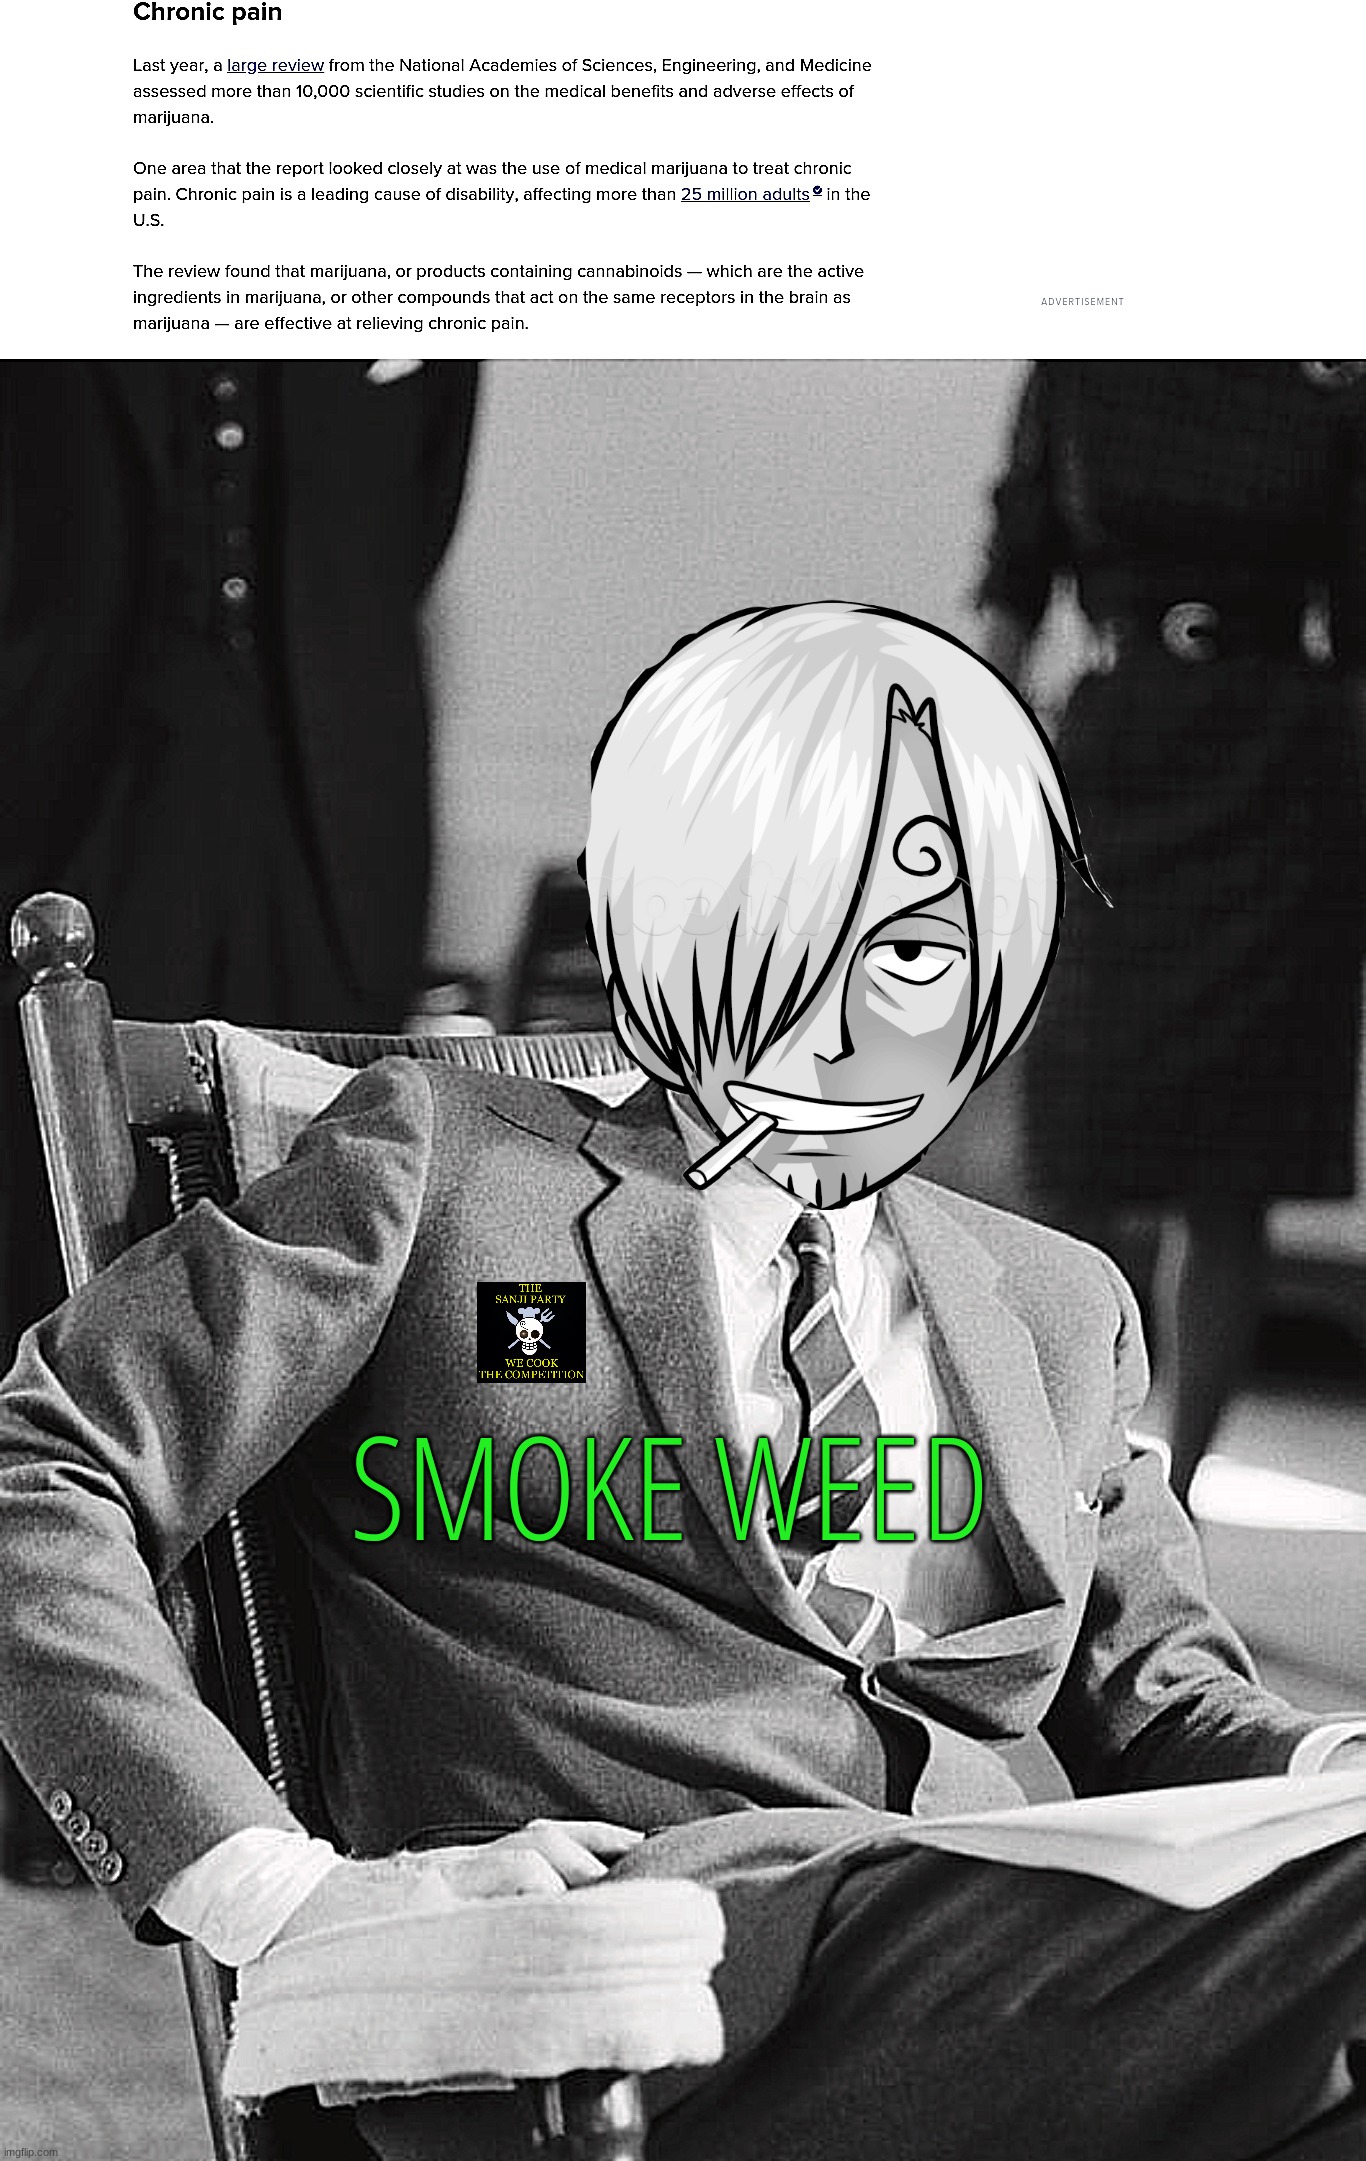 Weed good/vote for fidelsmooker | SMOKE WEED | image tagged in weed good,vote for sanji,fidelsmooker,weed | made w/ Imgflip meme maker